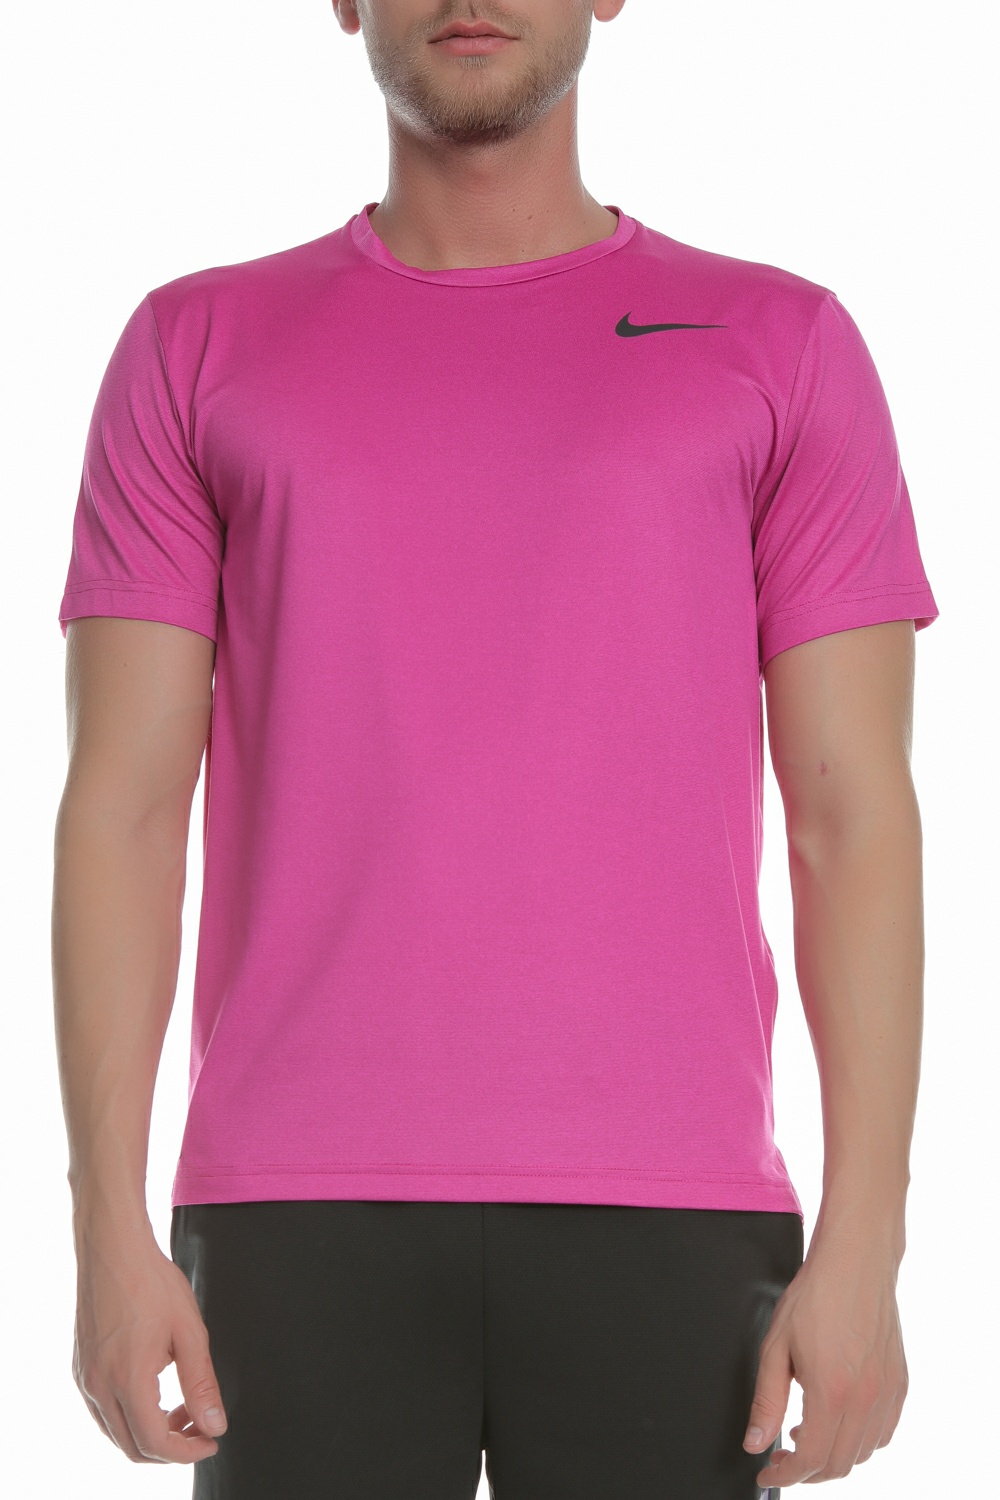 Ανδρικά/Ρούχα/Αθλητικά/T-shirt NIKE - Ανδρική μπλούζα NIKE BRT TOP SS HPR DRY ροζ